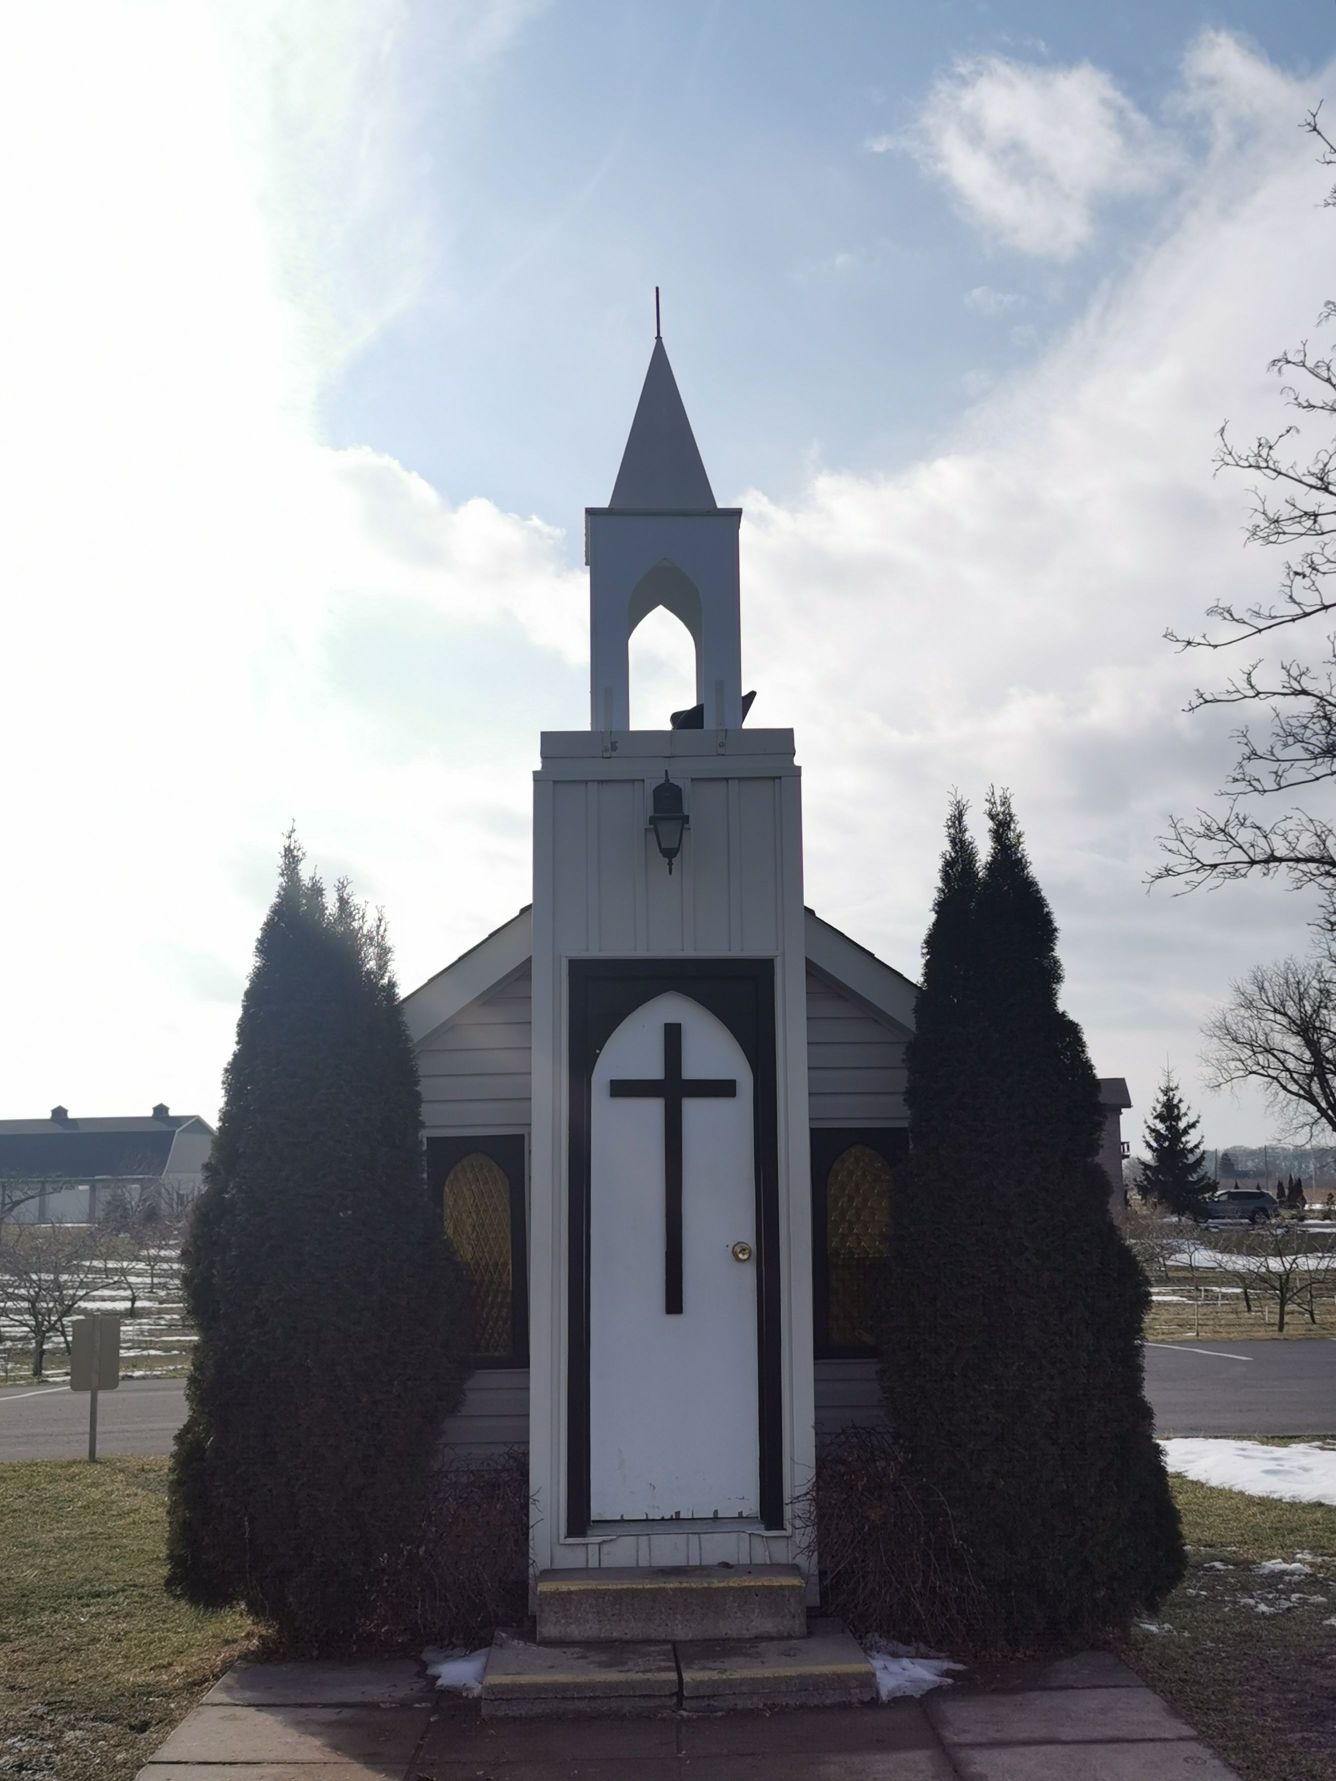 世界上最小的教堂———位于加拿大尼亚加拉小镇（Niagara on the lake）的教堂是世界上